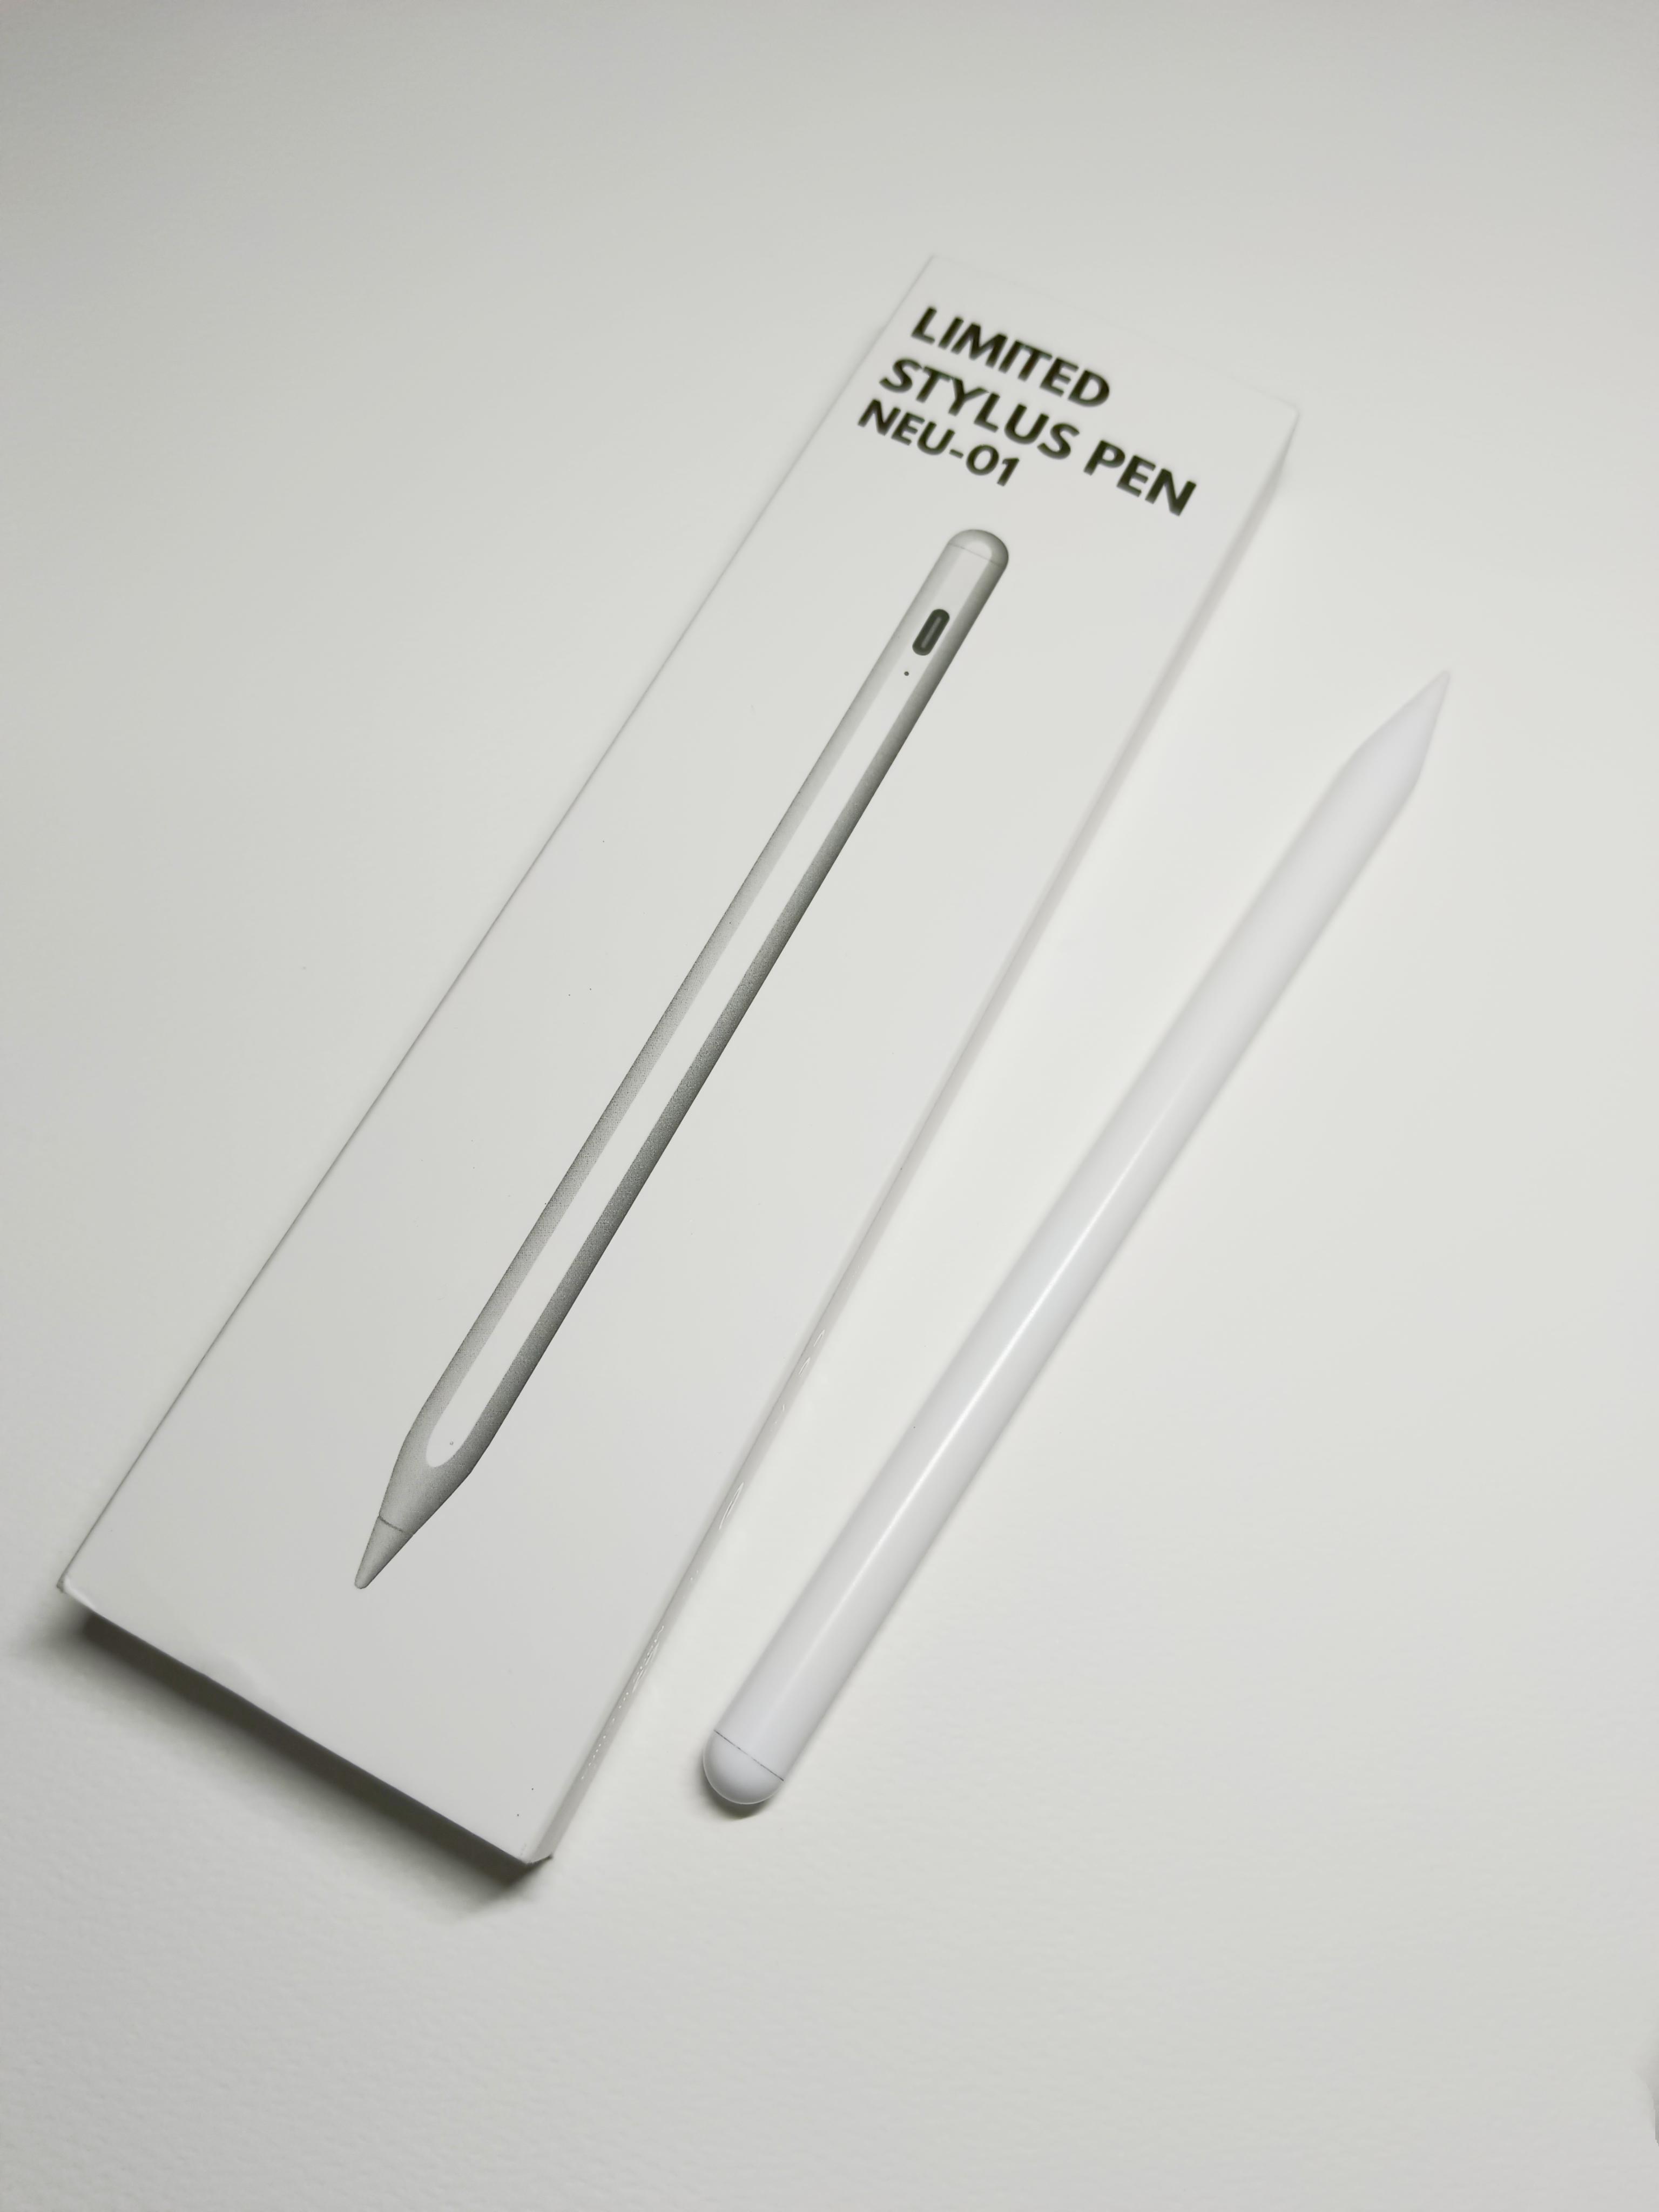 ภาพหน้าปก ปากกาไอแพดราคาหลักร้อยXXX ที่:0